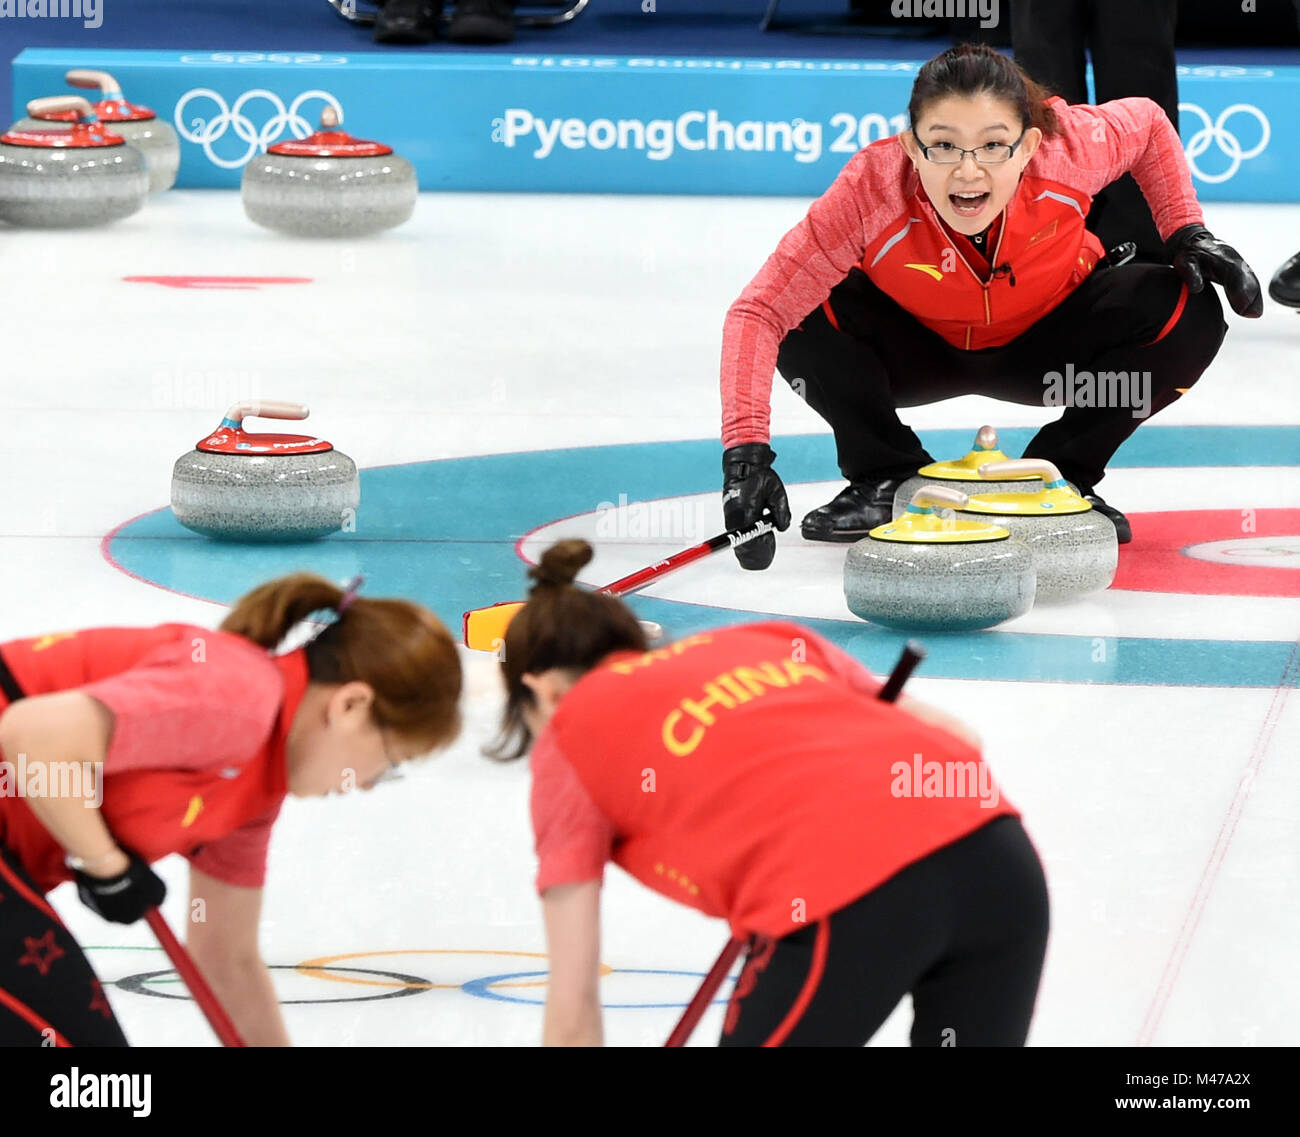 Pyeongchang, Corée du Sud. Feb 15, 2018. Bingyu Wang (arrière) de la concurrence de la Chine au cours de l'événement de la ronde des femmes contre les athlètes olympiques de curling de la Russie à l'occasion des Jeux Olympiques d'hiver de PyeongChang 2018 au Centre de curling Gangneung, Gangneung, Corée du Sud, le 15 février 2018. La Chine a perdu 6-7. Credit : Ma Ping/Xinhua/Alamy Live News Banque D'Images